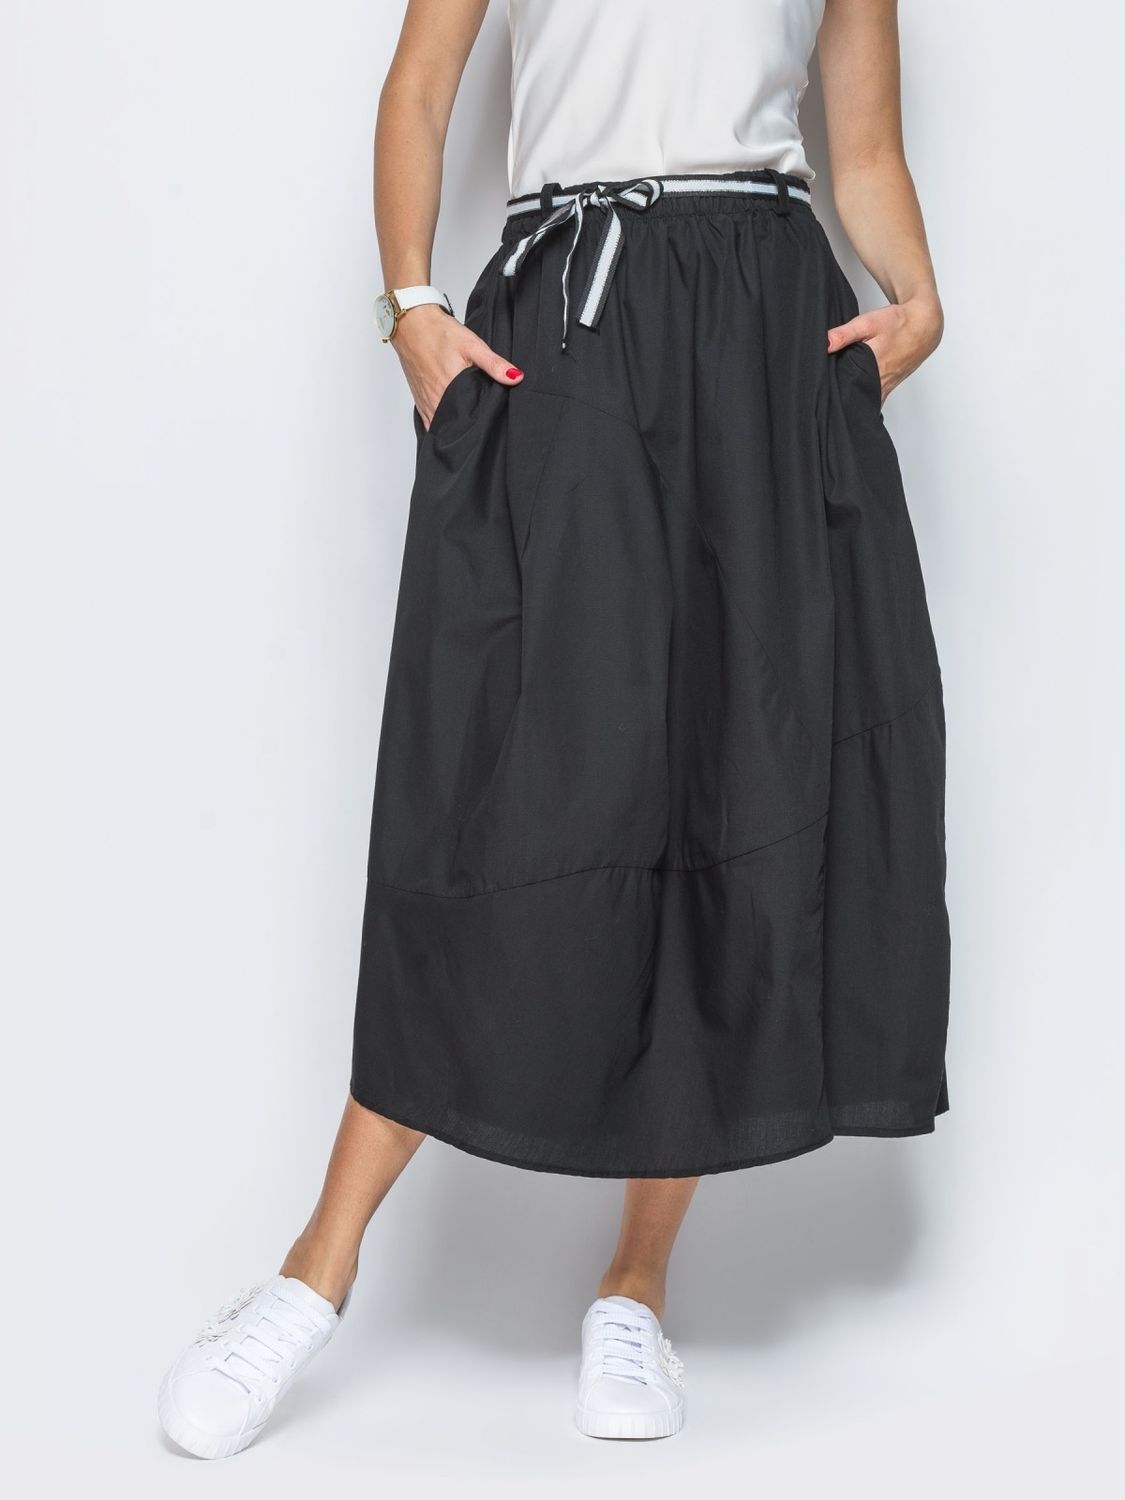 Летняя юбка макси черного цвета - фото